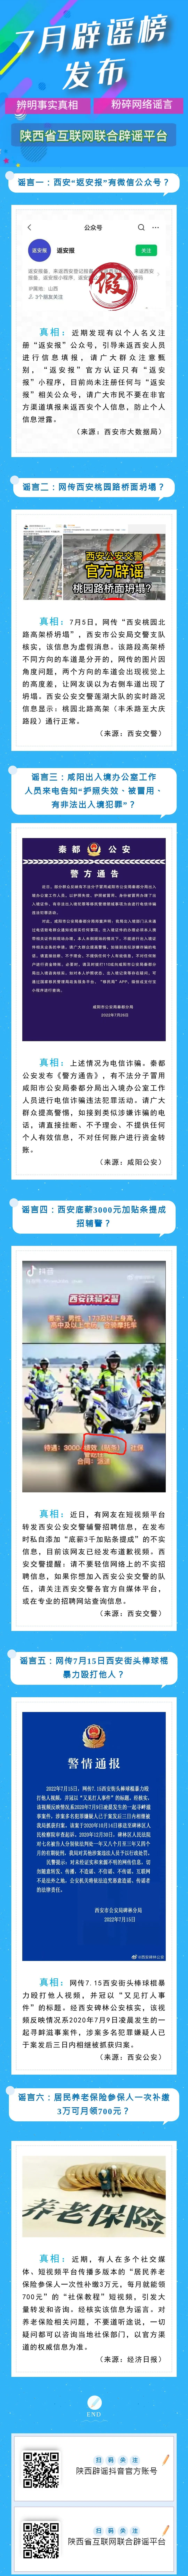 陕西省互联网联合辟谣平台7月辟谣榜发布